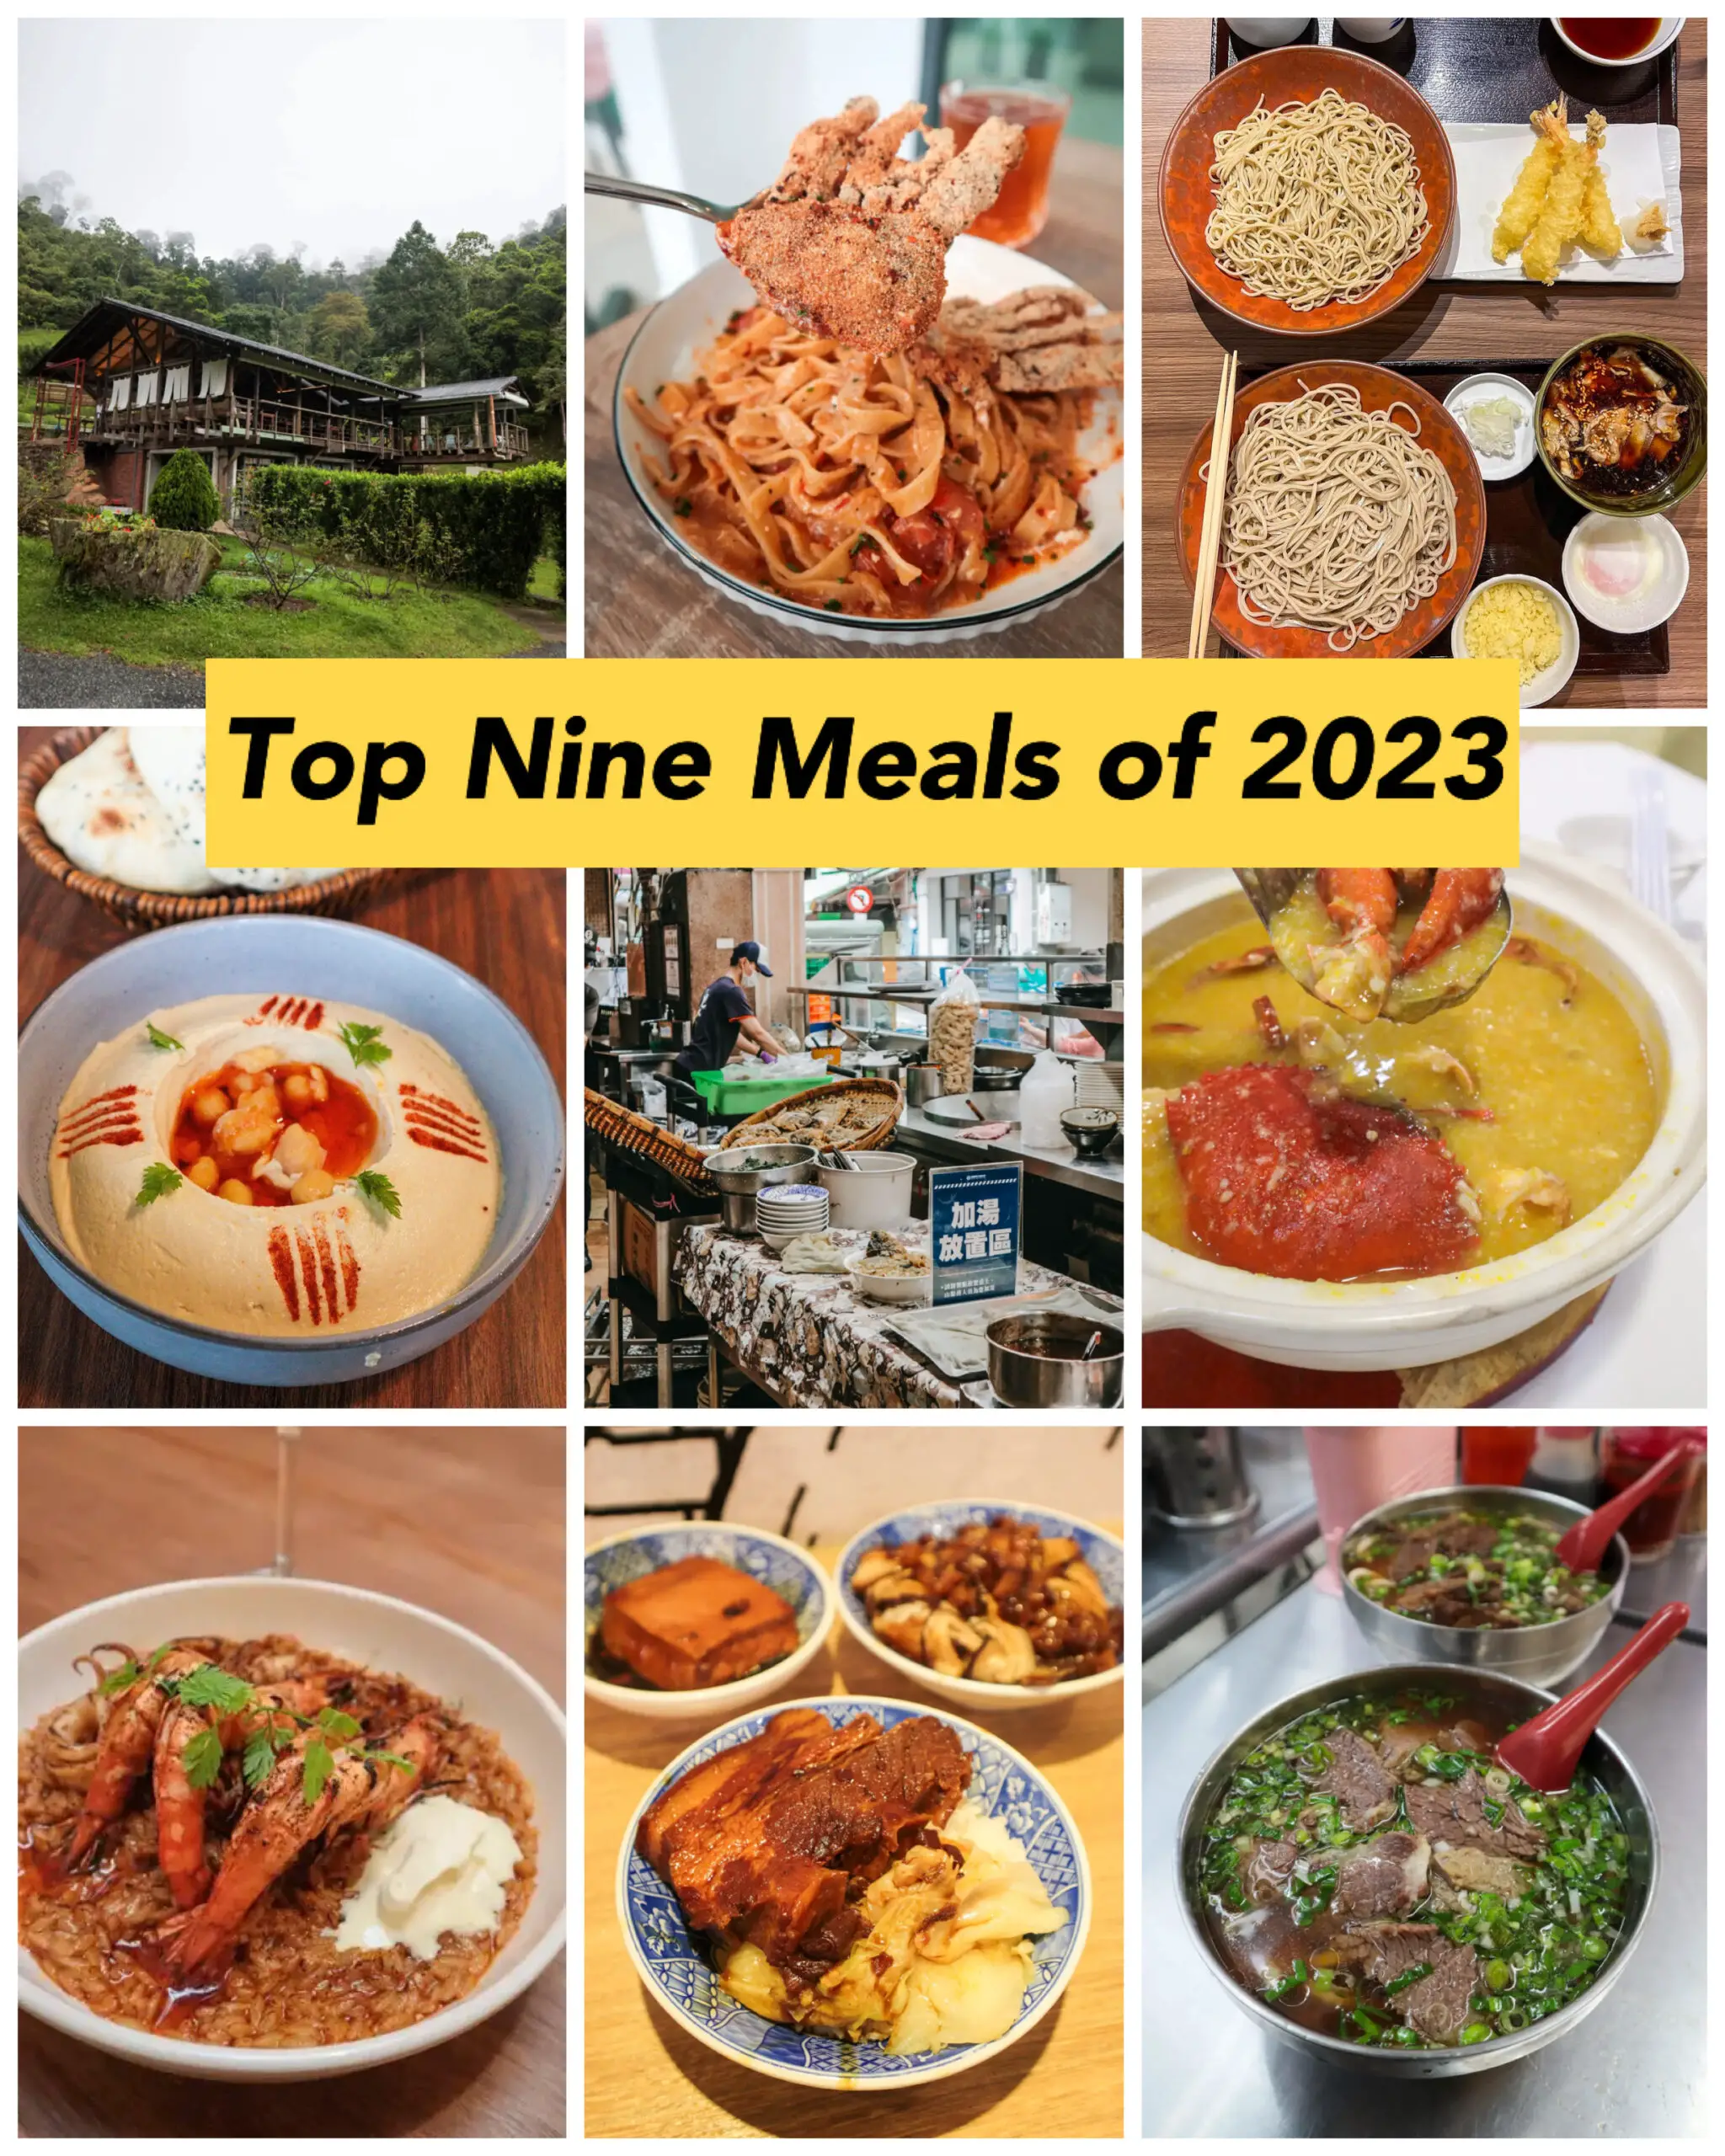 Top Nine Meals of 2023